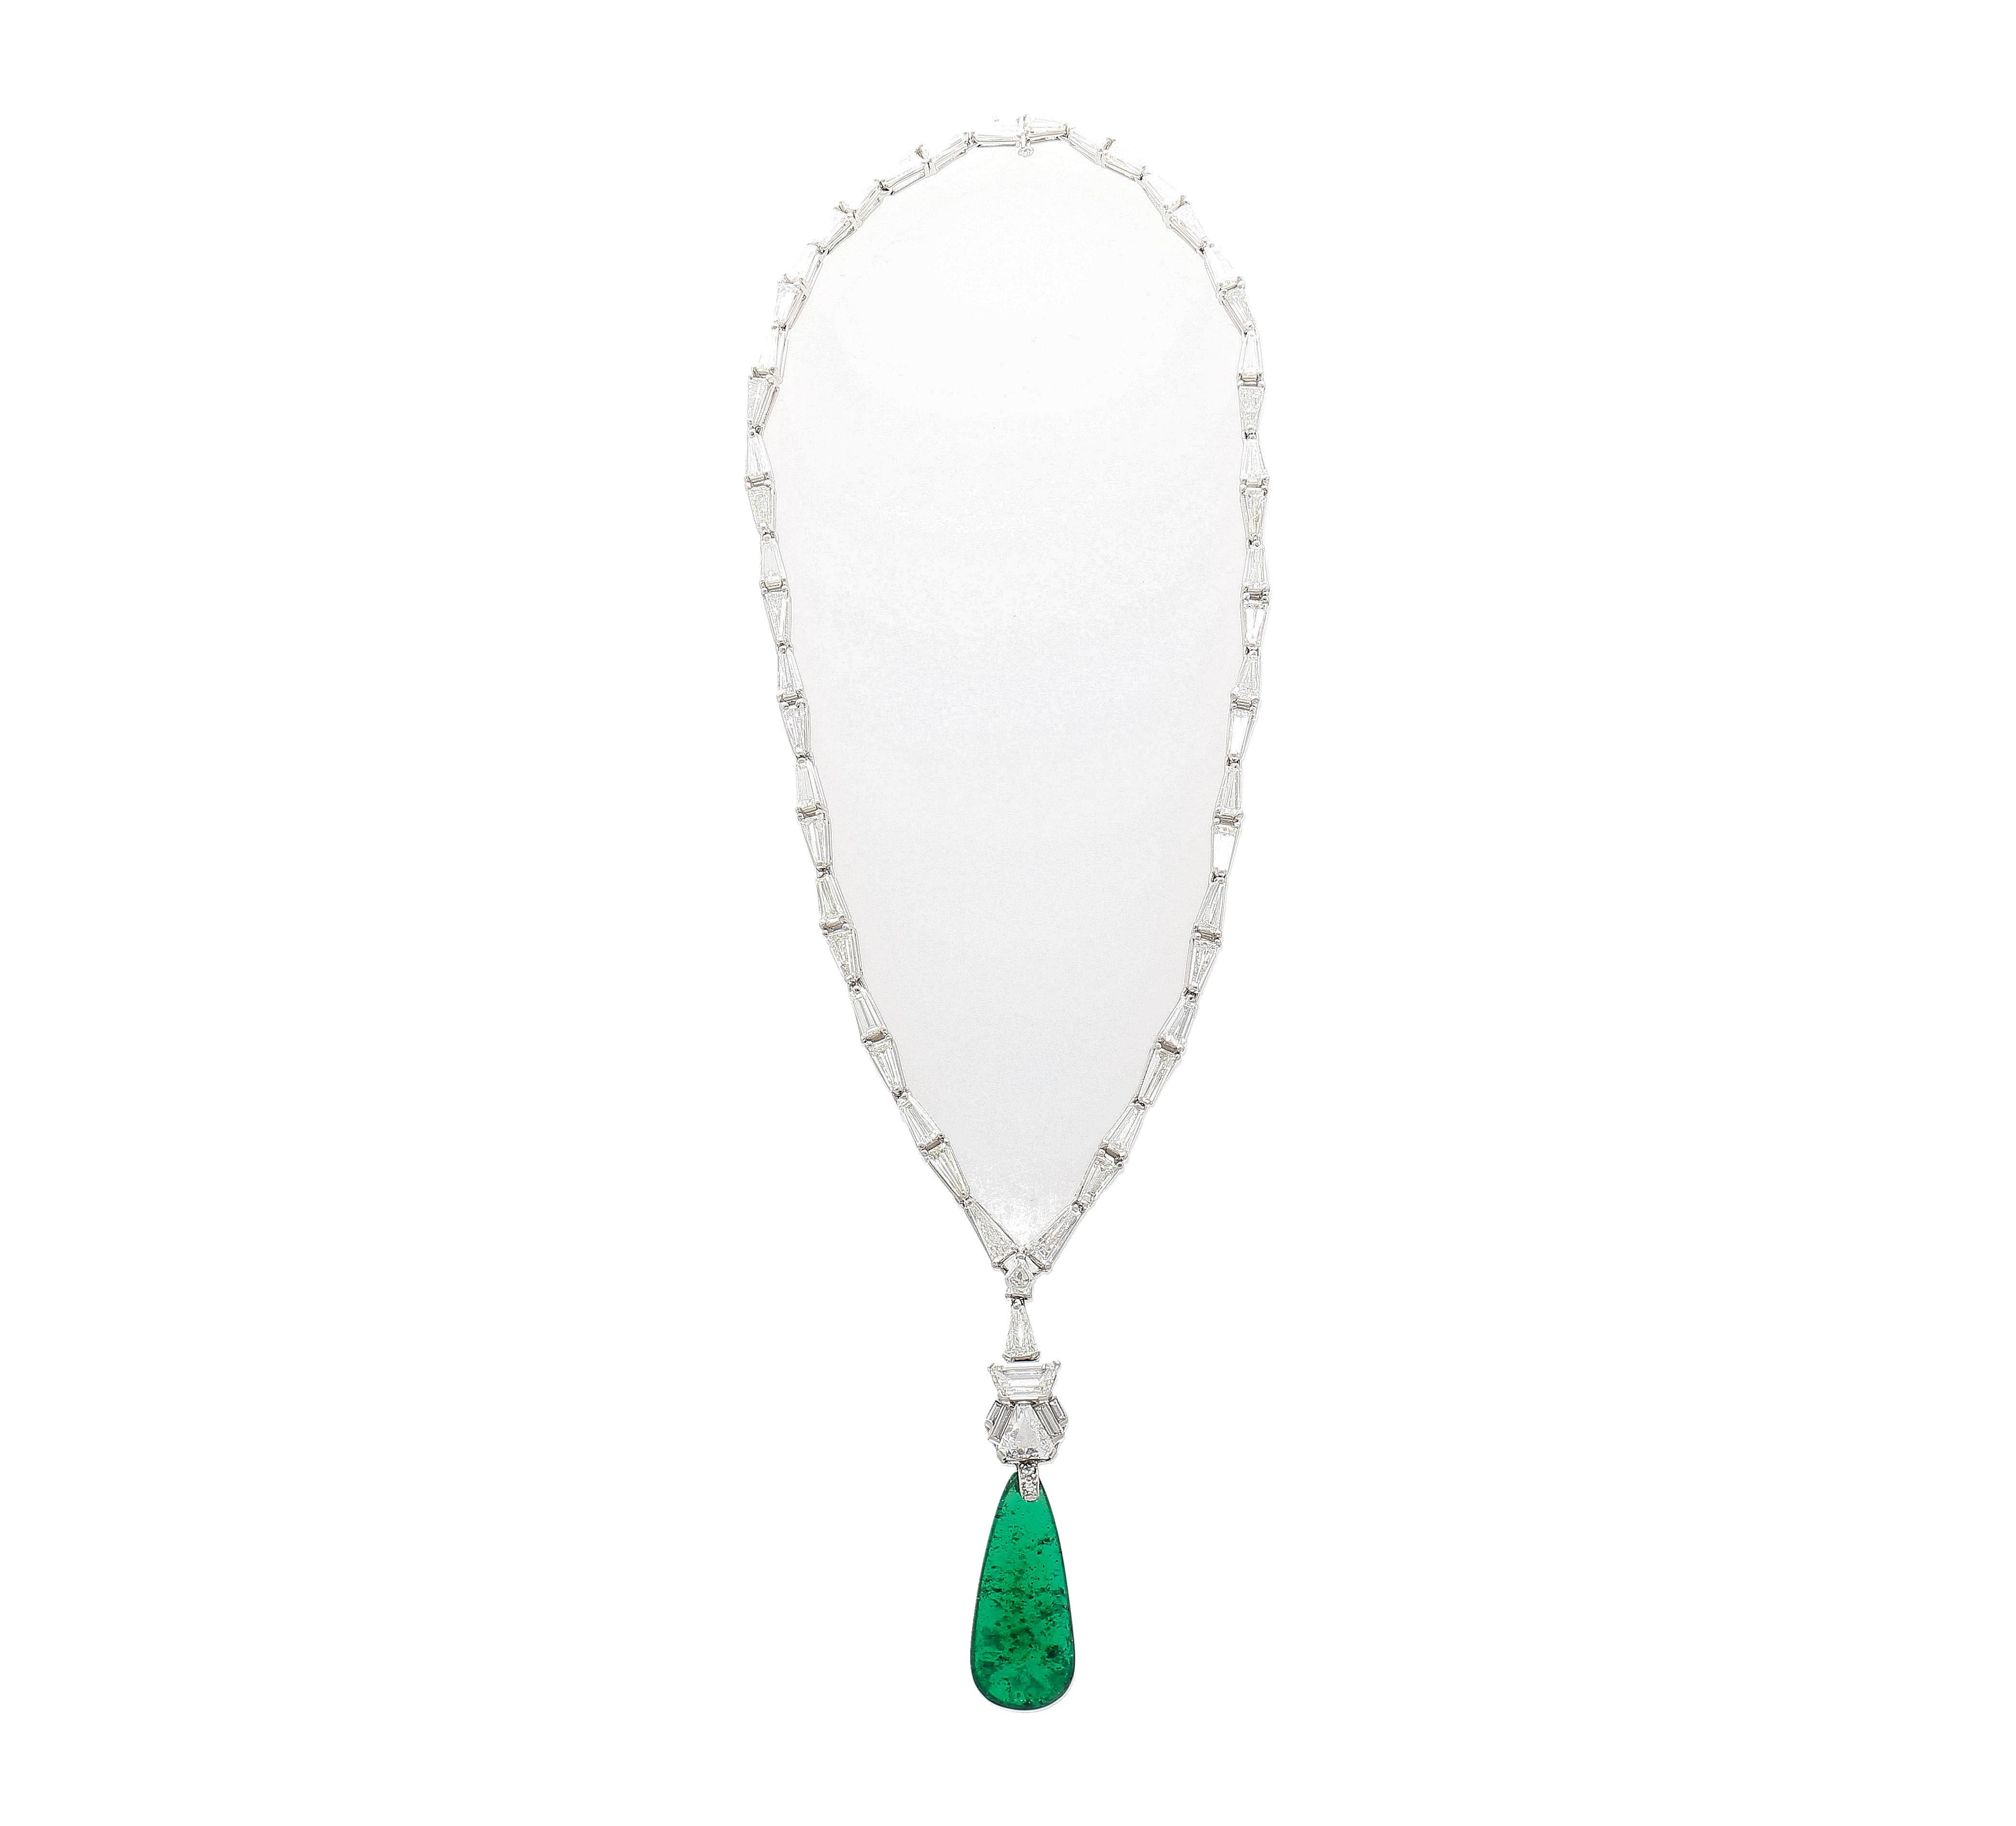 Entdecken Sie zeitlose Eleganz mit unserer Halskette aus 17 Karat kolumbianischem Smaragd und Diamanten in 18 Karat Gold. Dieses exquisite Stück präsentiert einen fesselnden AGL-zertifizierten kolumbianischen Smaragd in Tropfenform mit 17,04 Karat